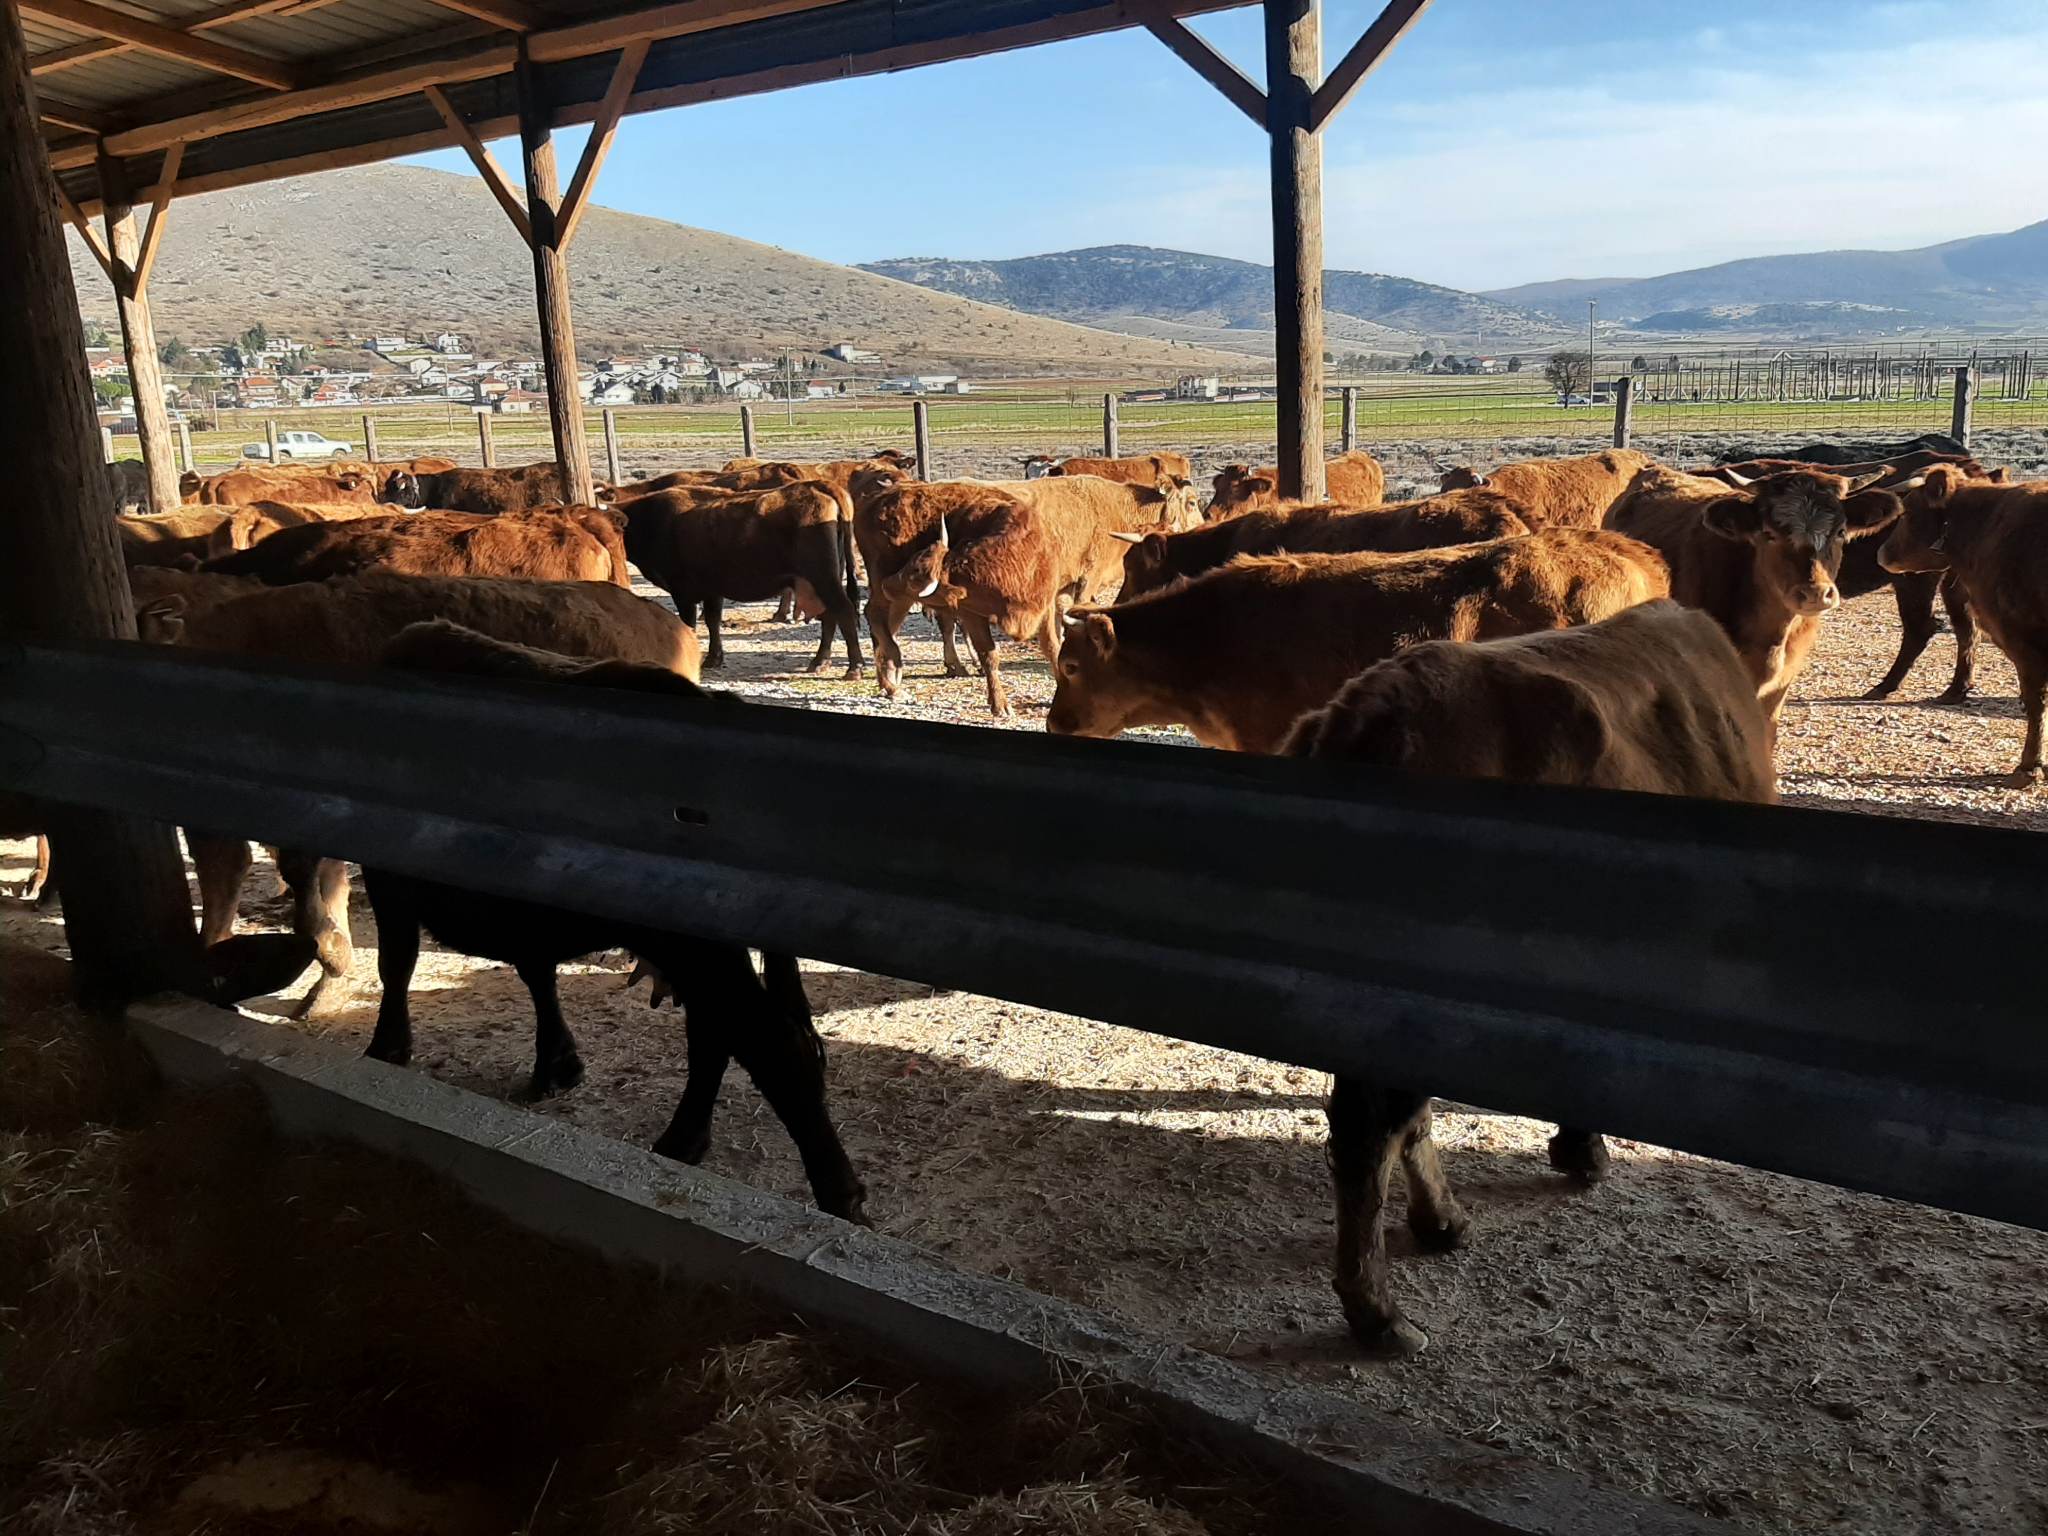     Μειώνουν την παραγωγή λόγω ακρίβειας οι κτηνοτρόφοι στην Κοζάνη – Ζητούν μείωση του κόστους παραγωγής